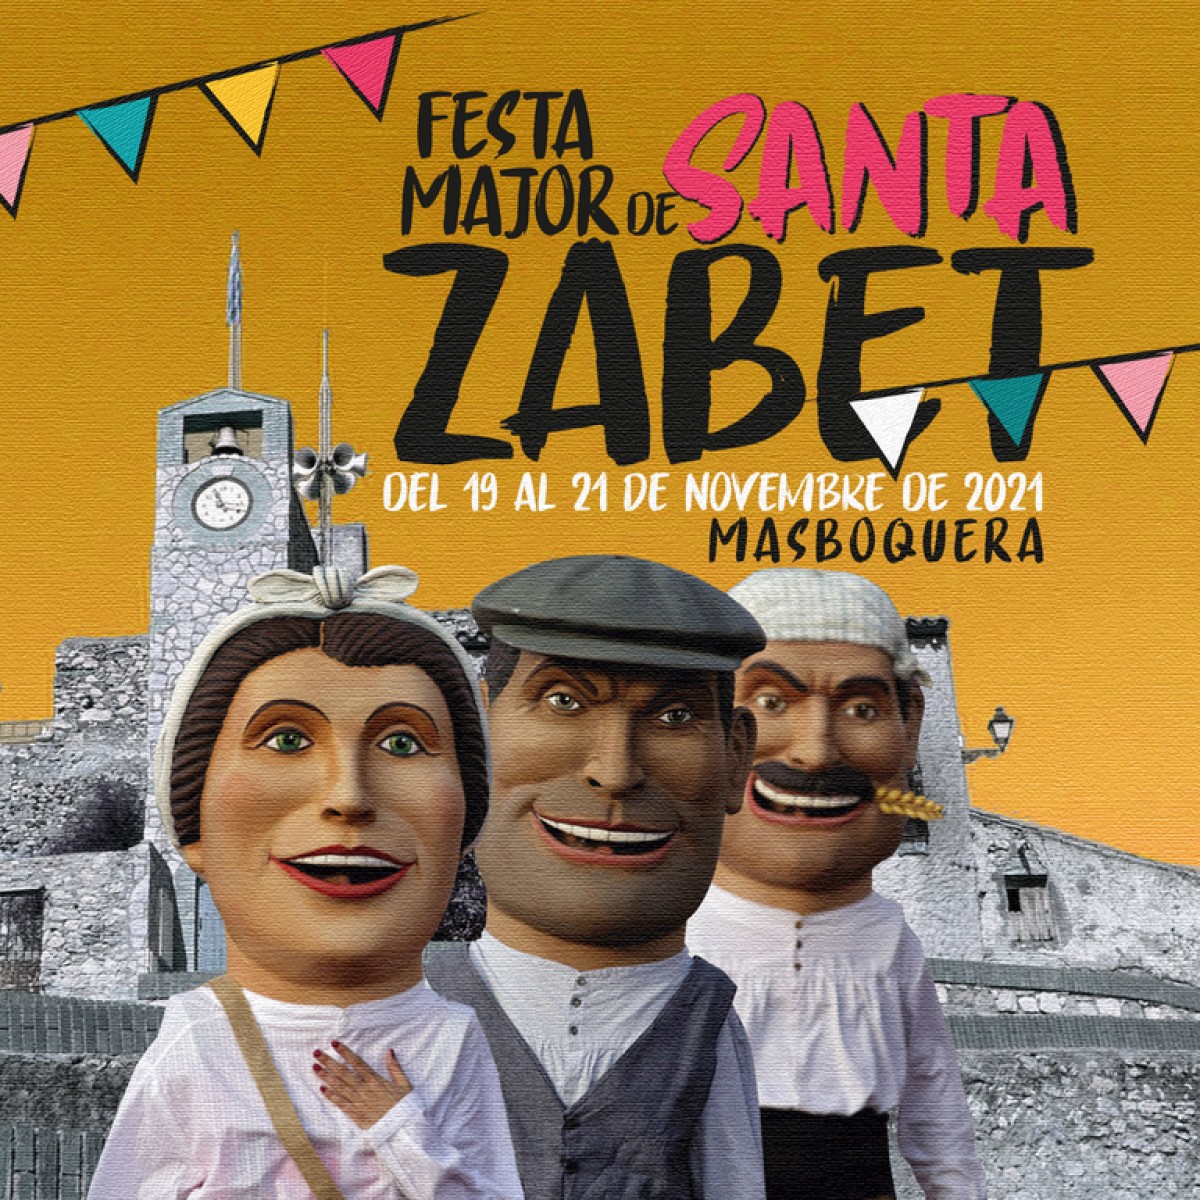 Portada del programa d'actes de la Festa Major de Masboquera 2021